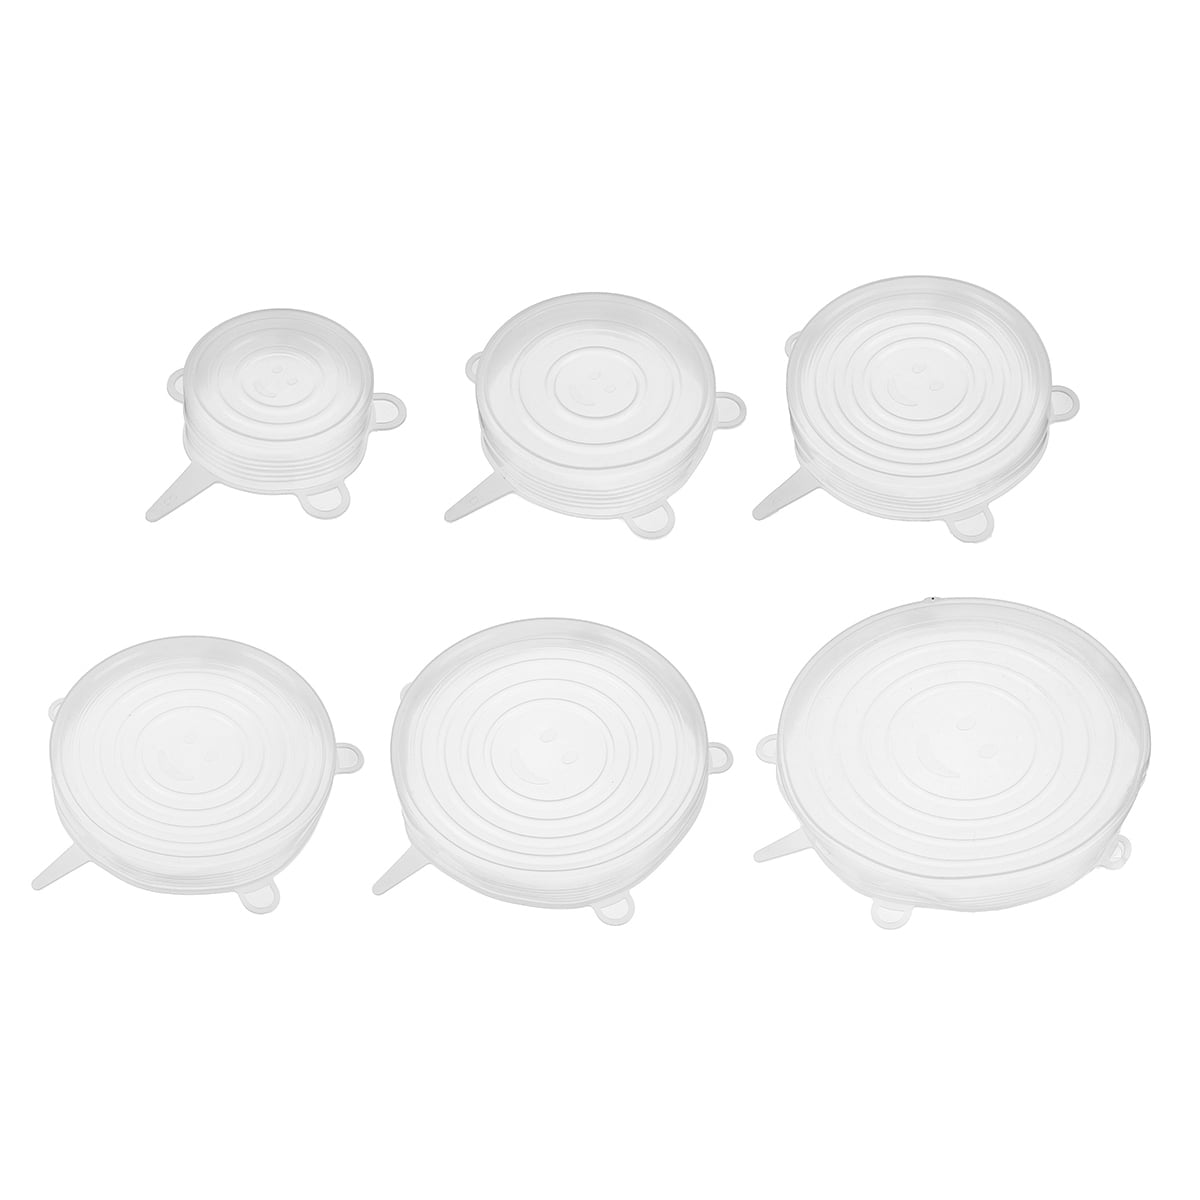 Details about   6/12 pcs Set Stretch Silicone Food Bowl Cover Storage Wraps Seals Reusable Lids 